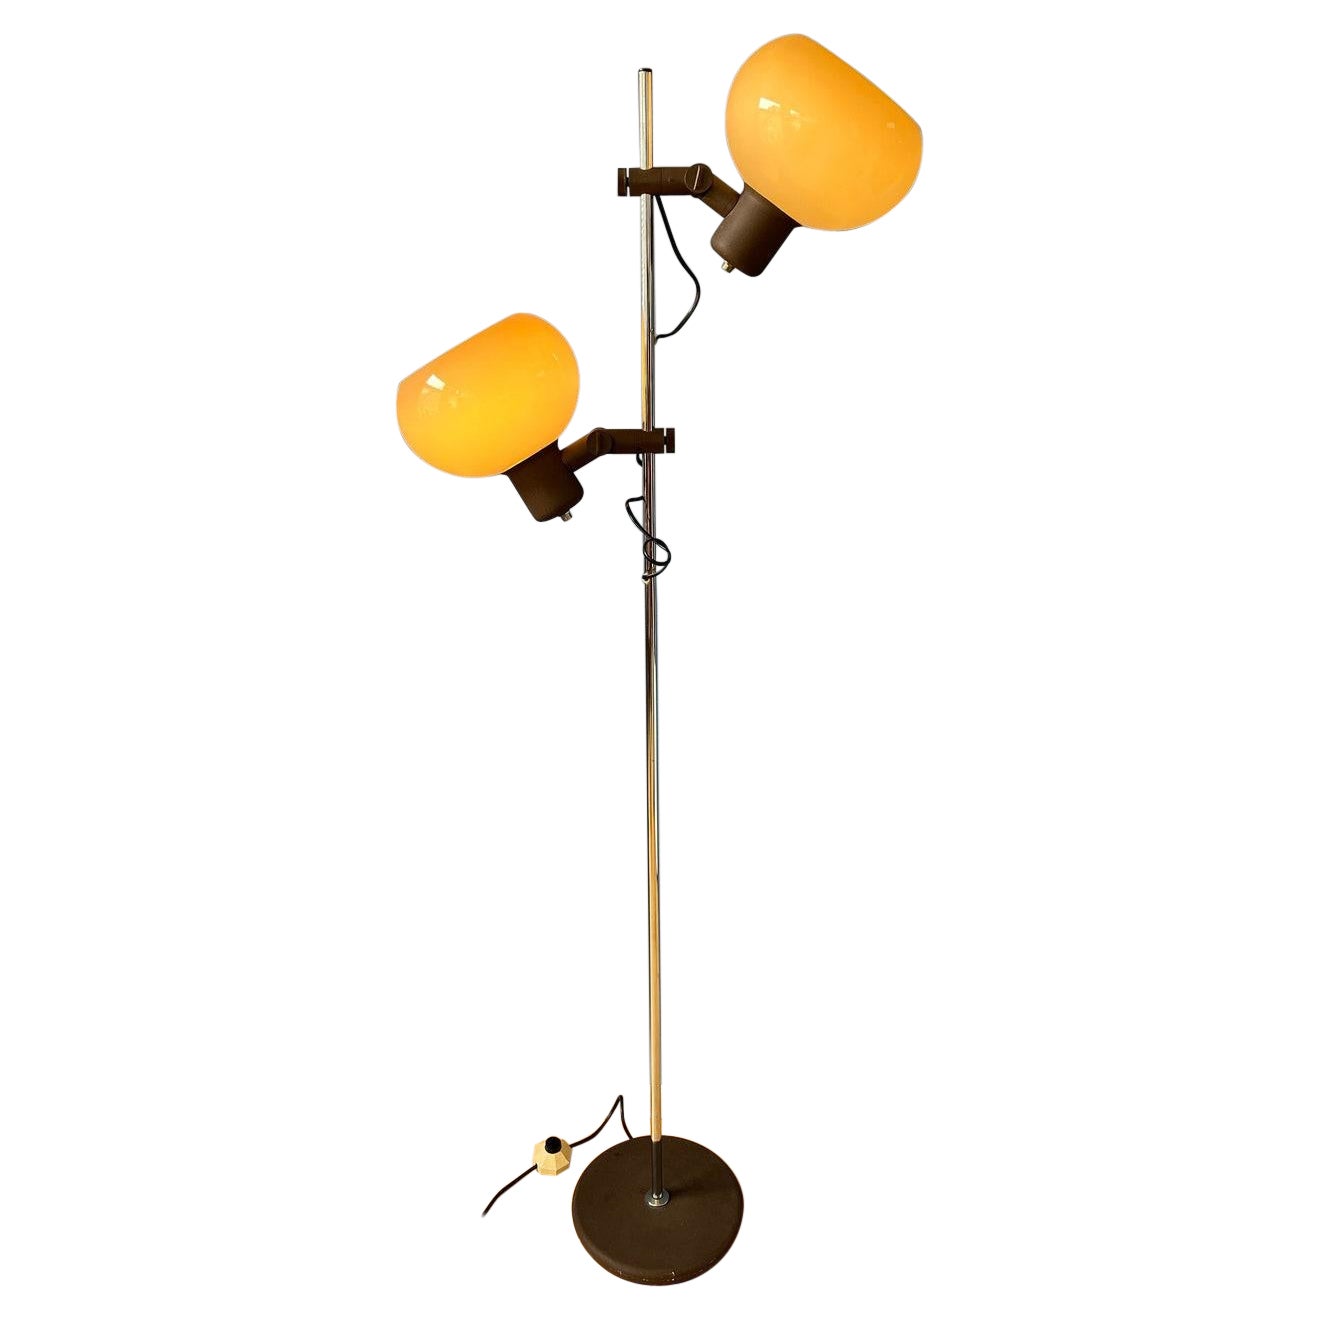 Vintage-Stehlampe Herda Pilz, Space Age Guzzini-Stil, Standleuchte, 1970er Jahre